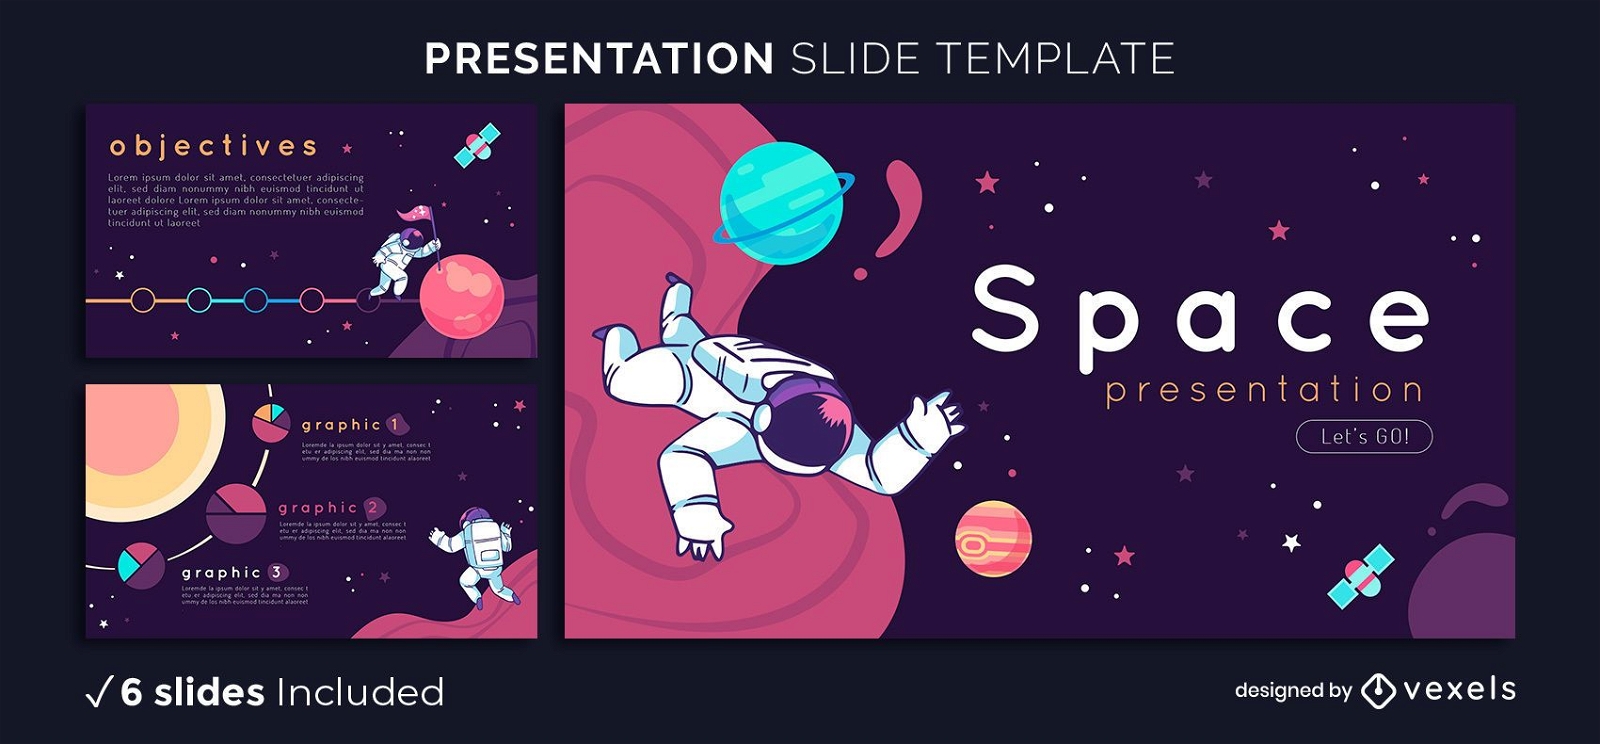 vector space presentation